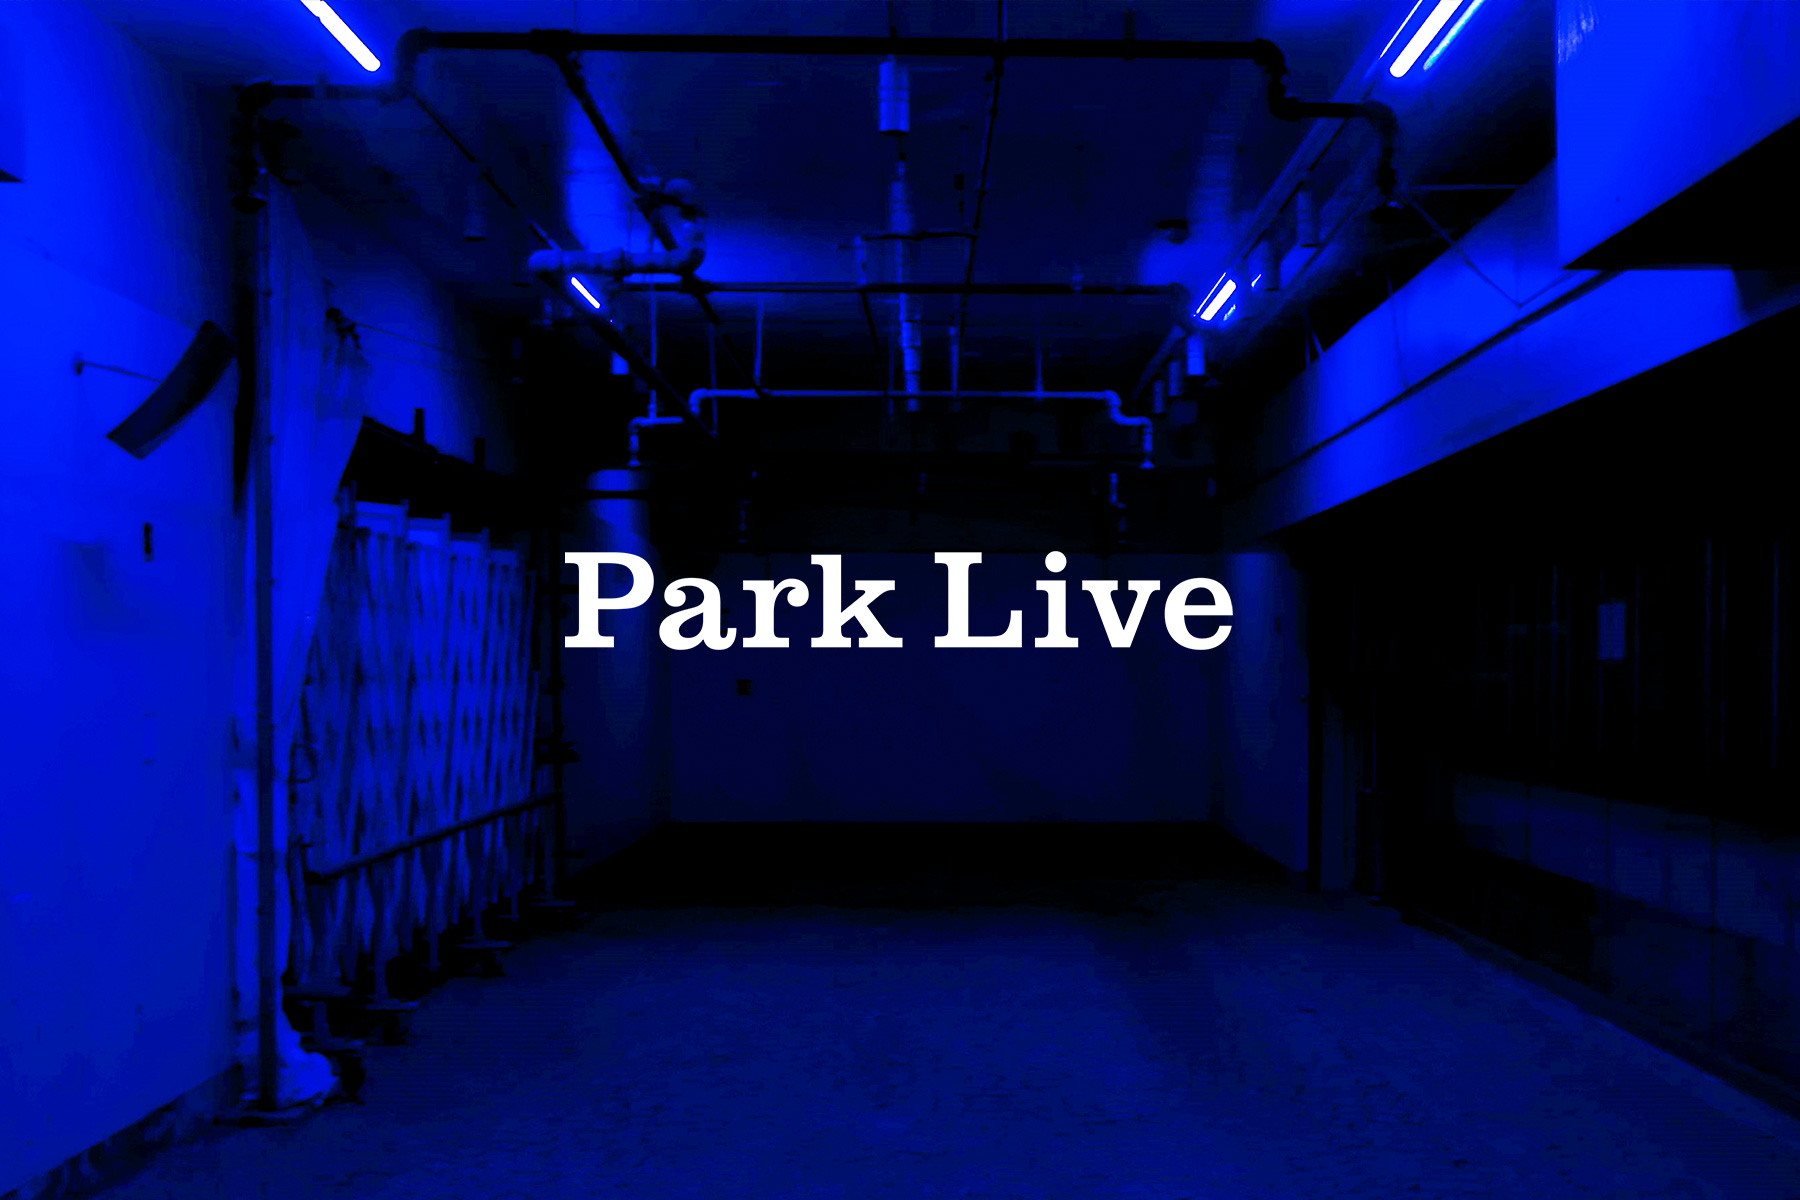 ”Park Live” announcement visual